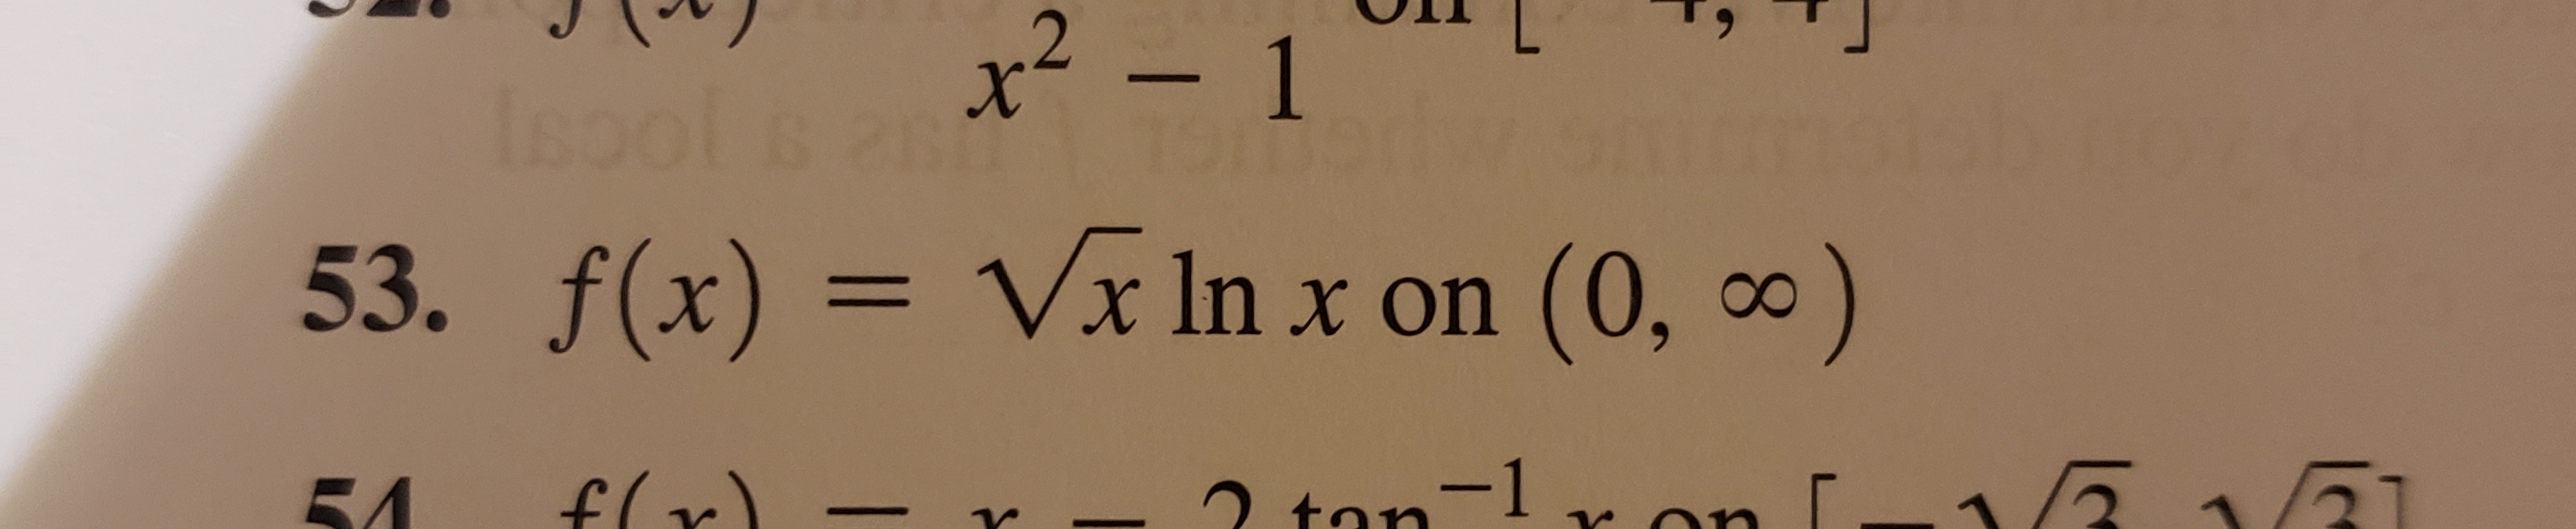 x2-
- 1
Isool
53. f(x) = Vx In x on (0, )
X
2. tan=lvan
